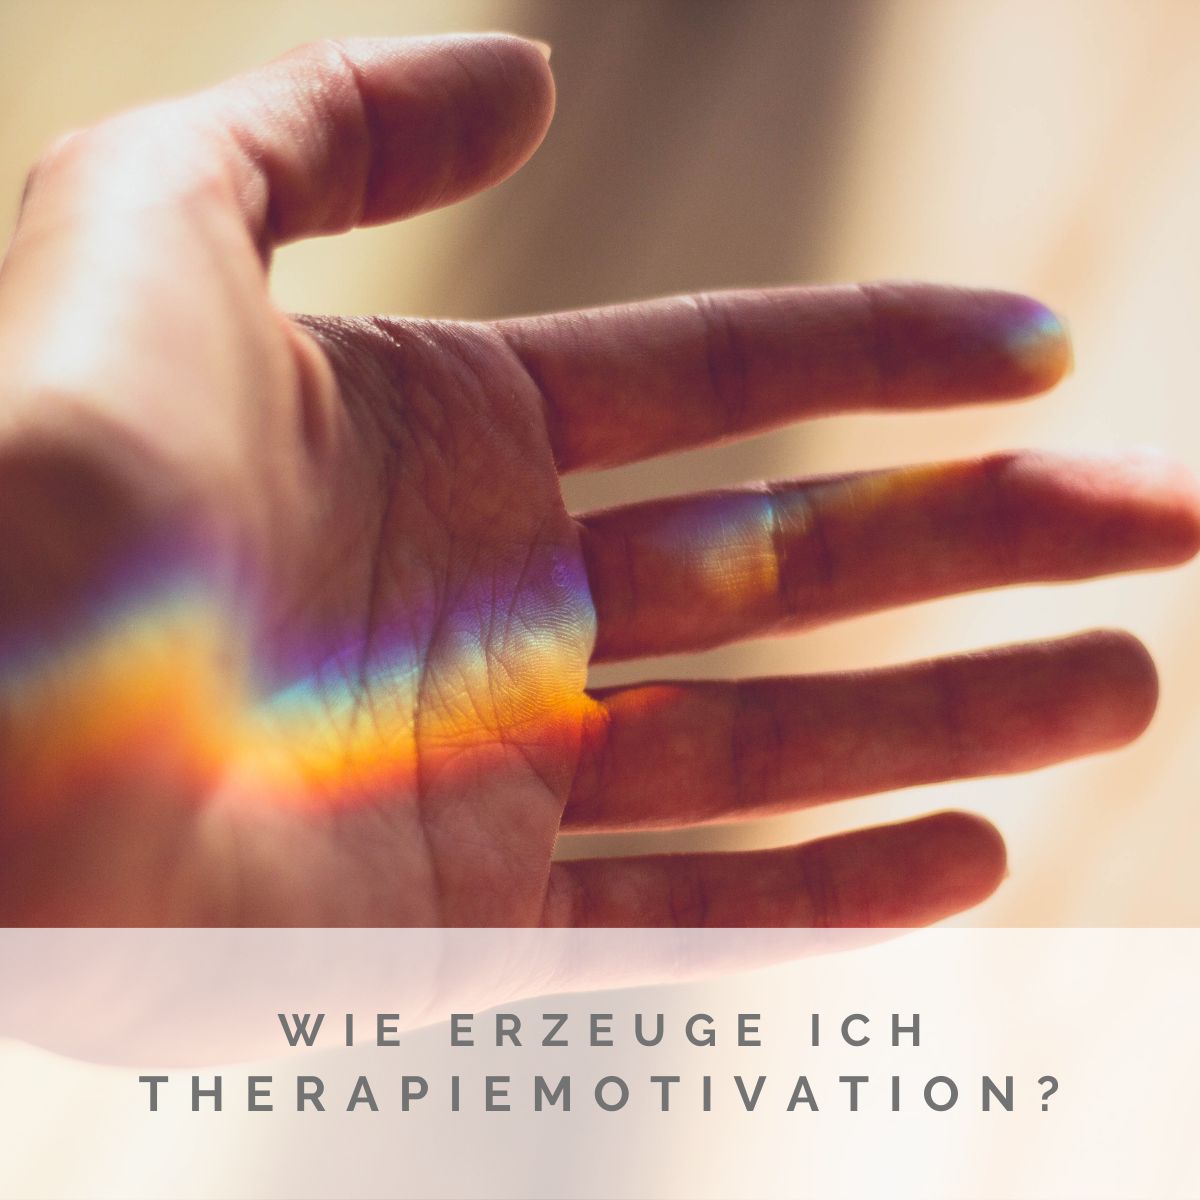 Wie erzeuge ich Therapiemotivation?